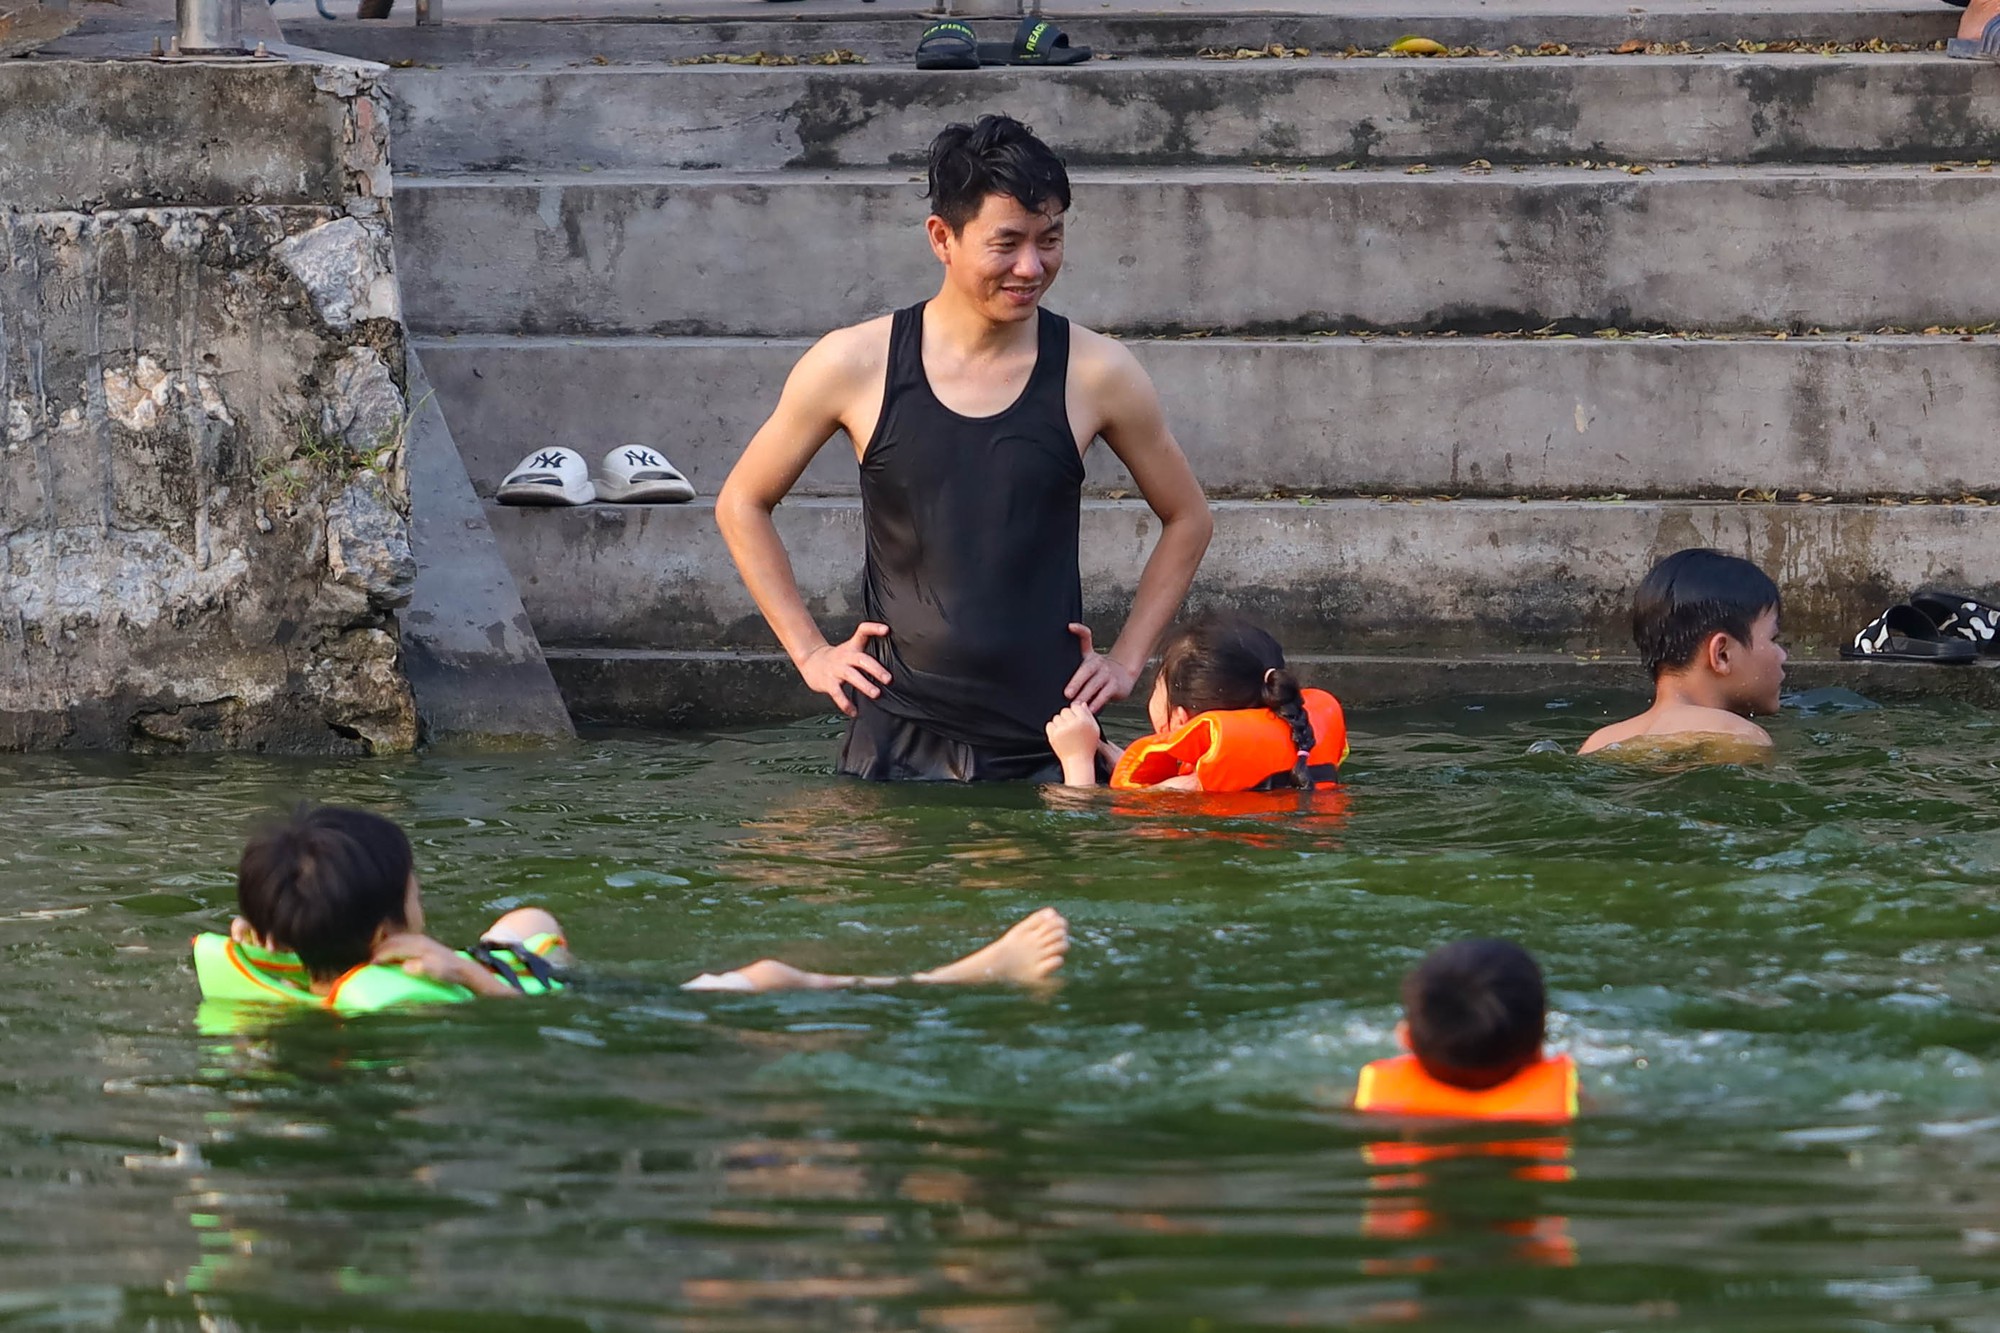 Hà Nội: Ao làng trở thành bể bơi, người dân thích thú ngâm mình “giải nhiệt” - Ảnh 7.